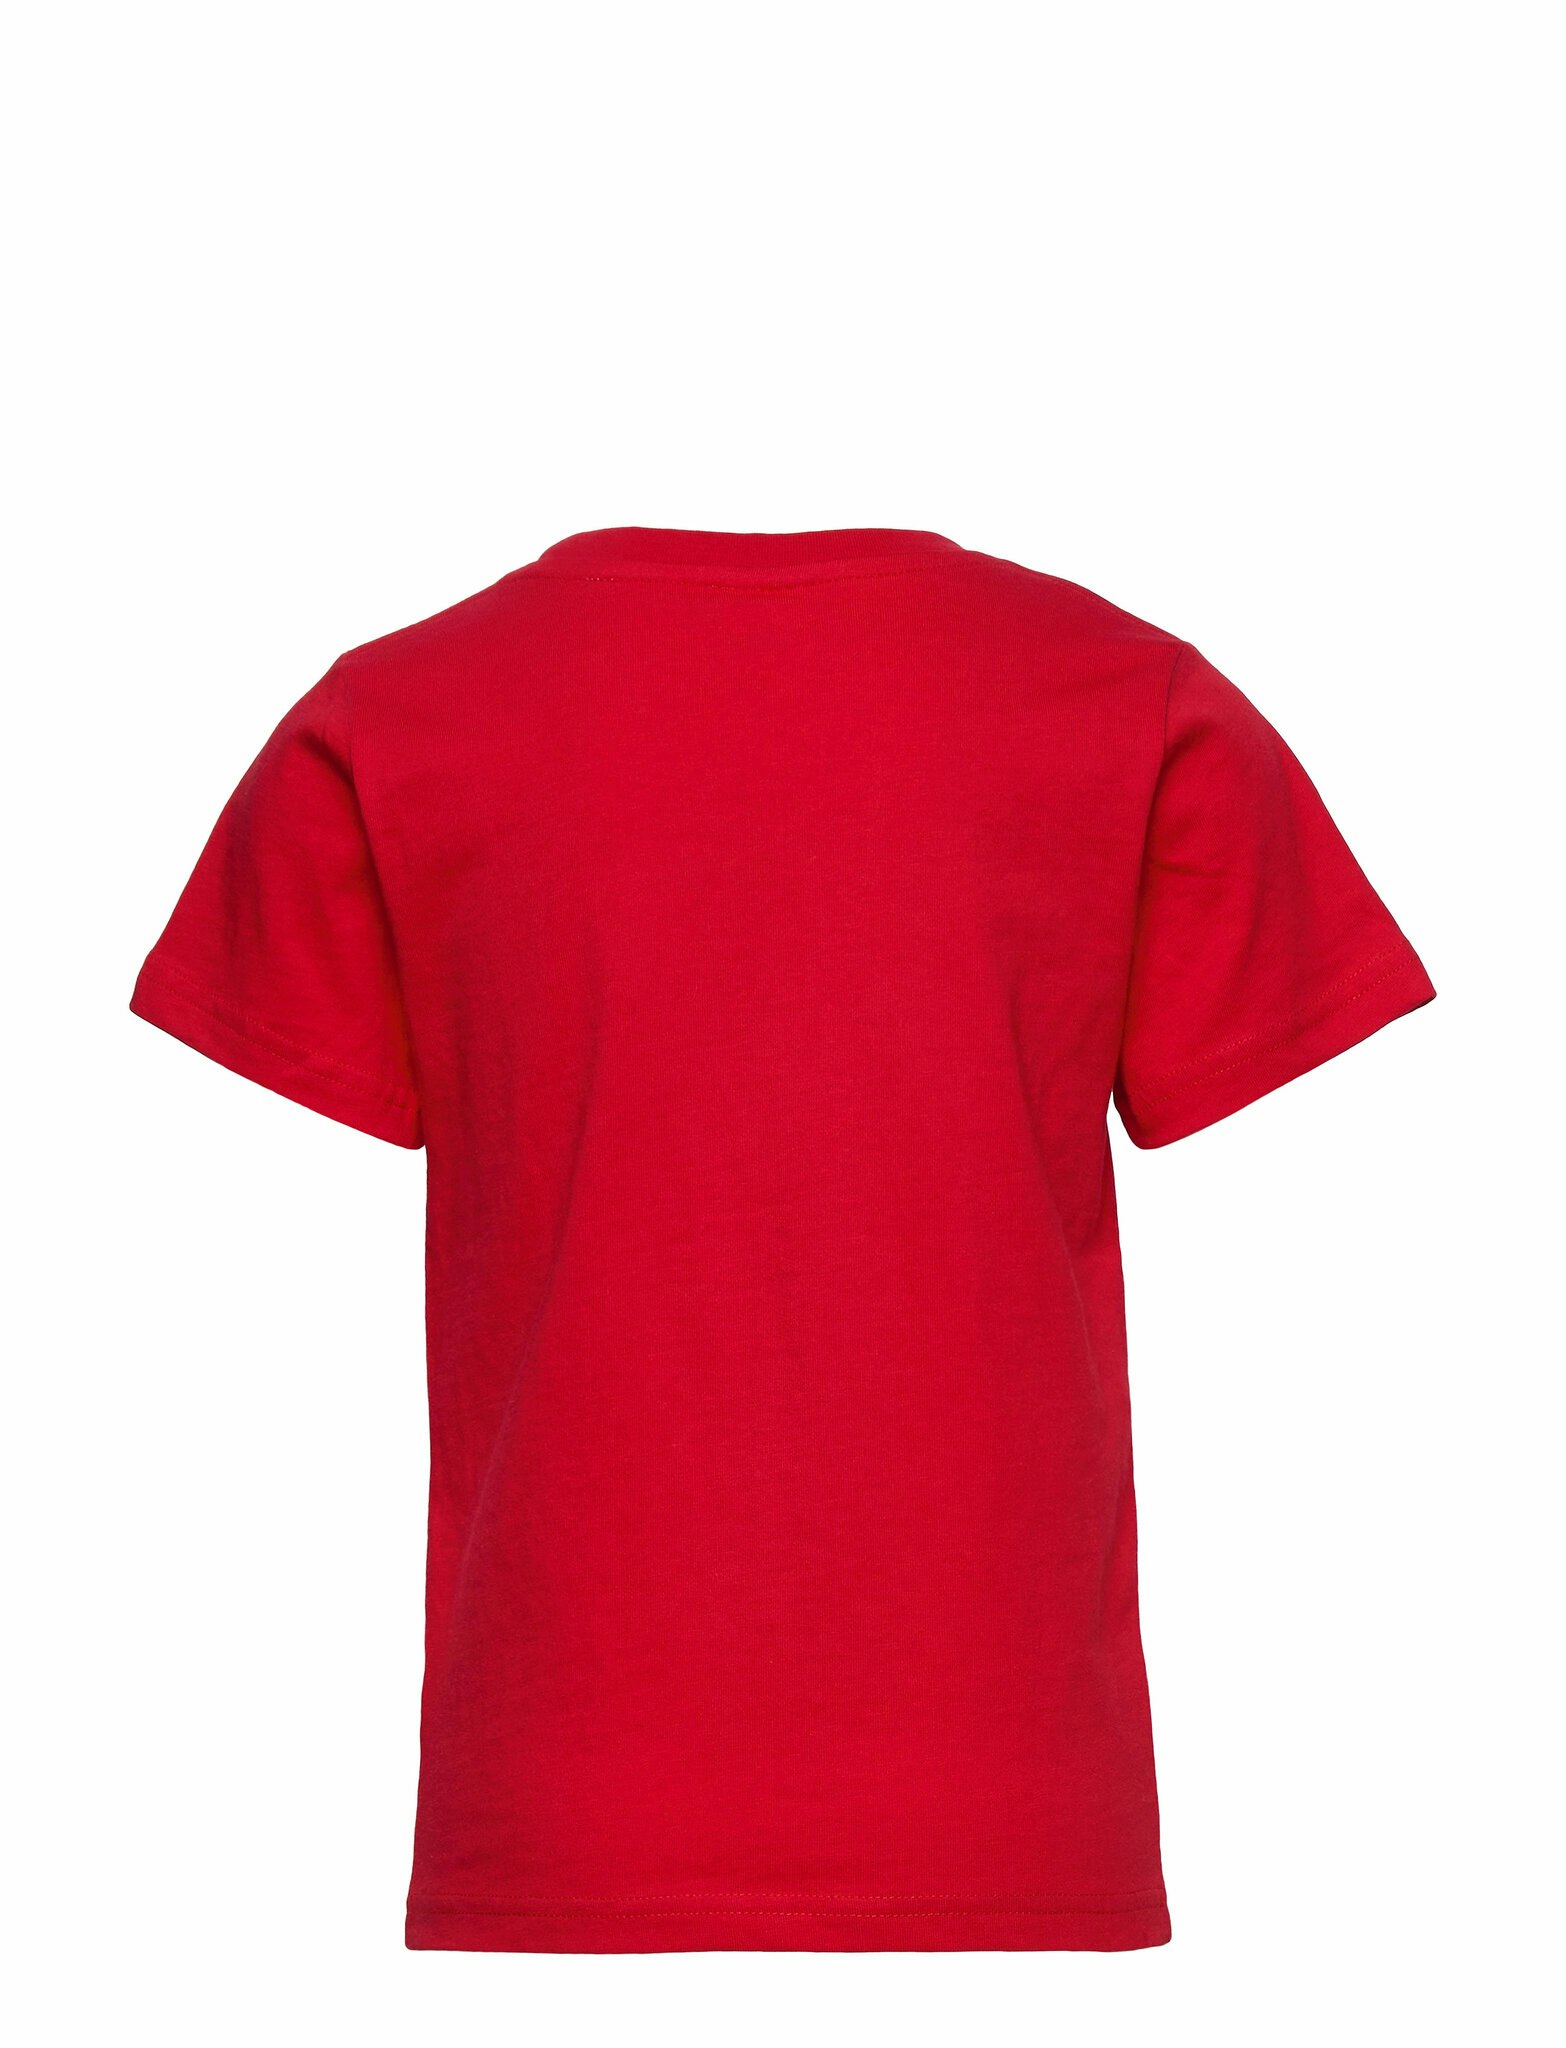 T-Shirt, Pippi Langstrumpf Rot